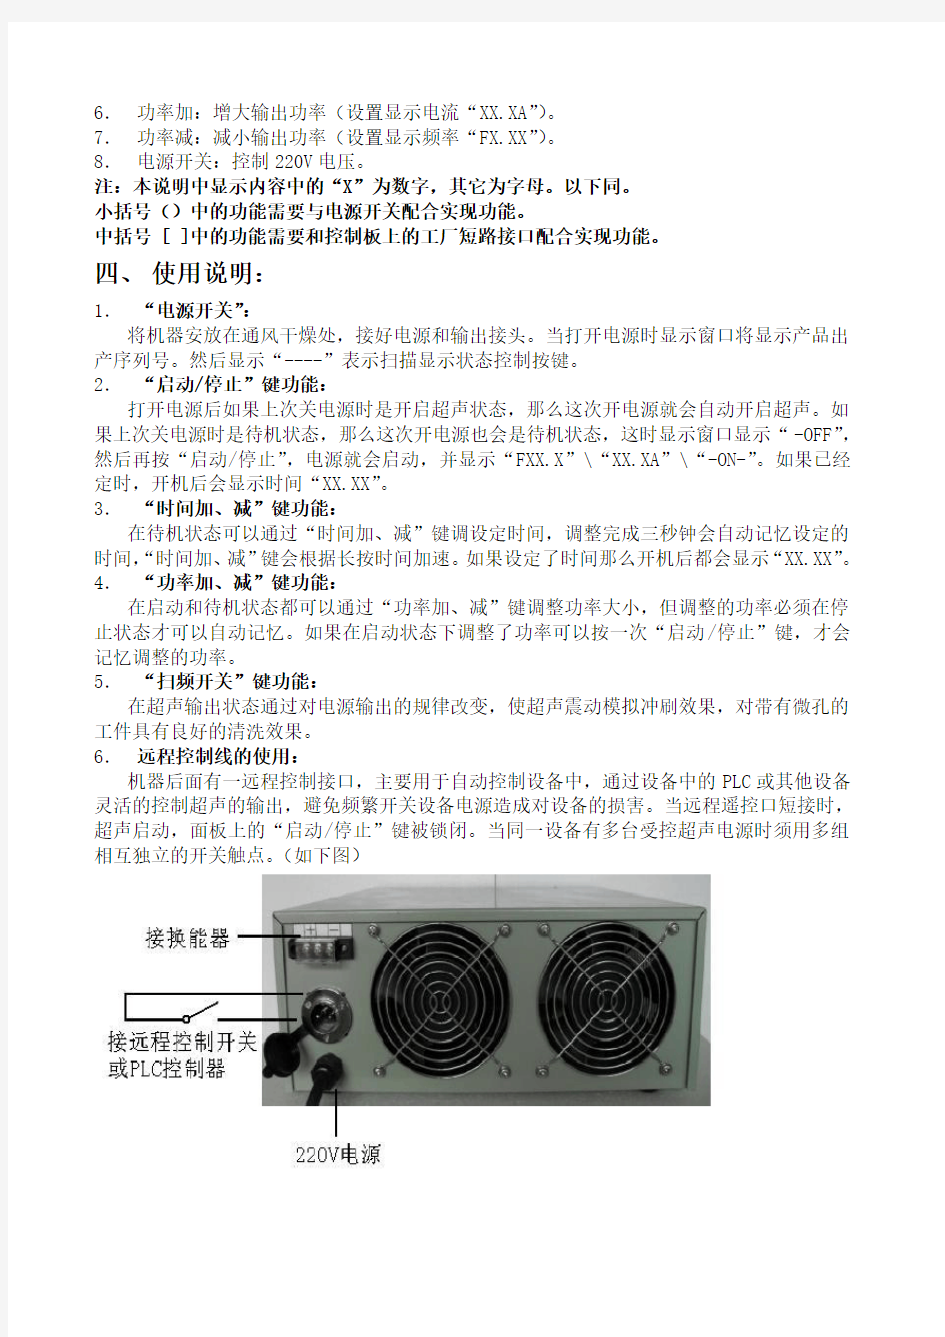 超声波发生器说明书(1)